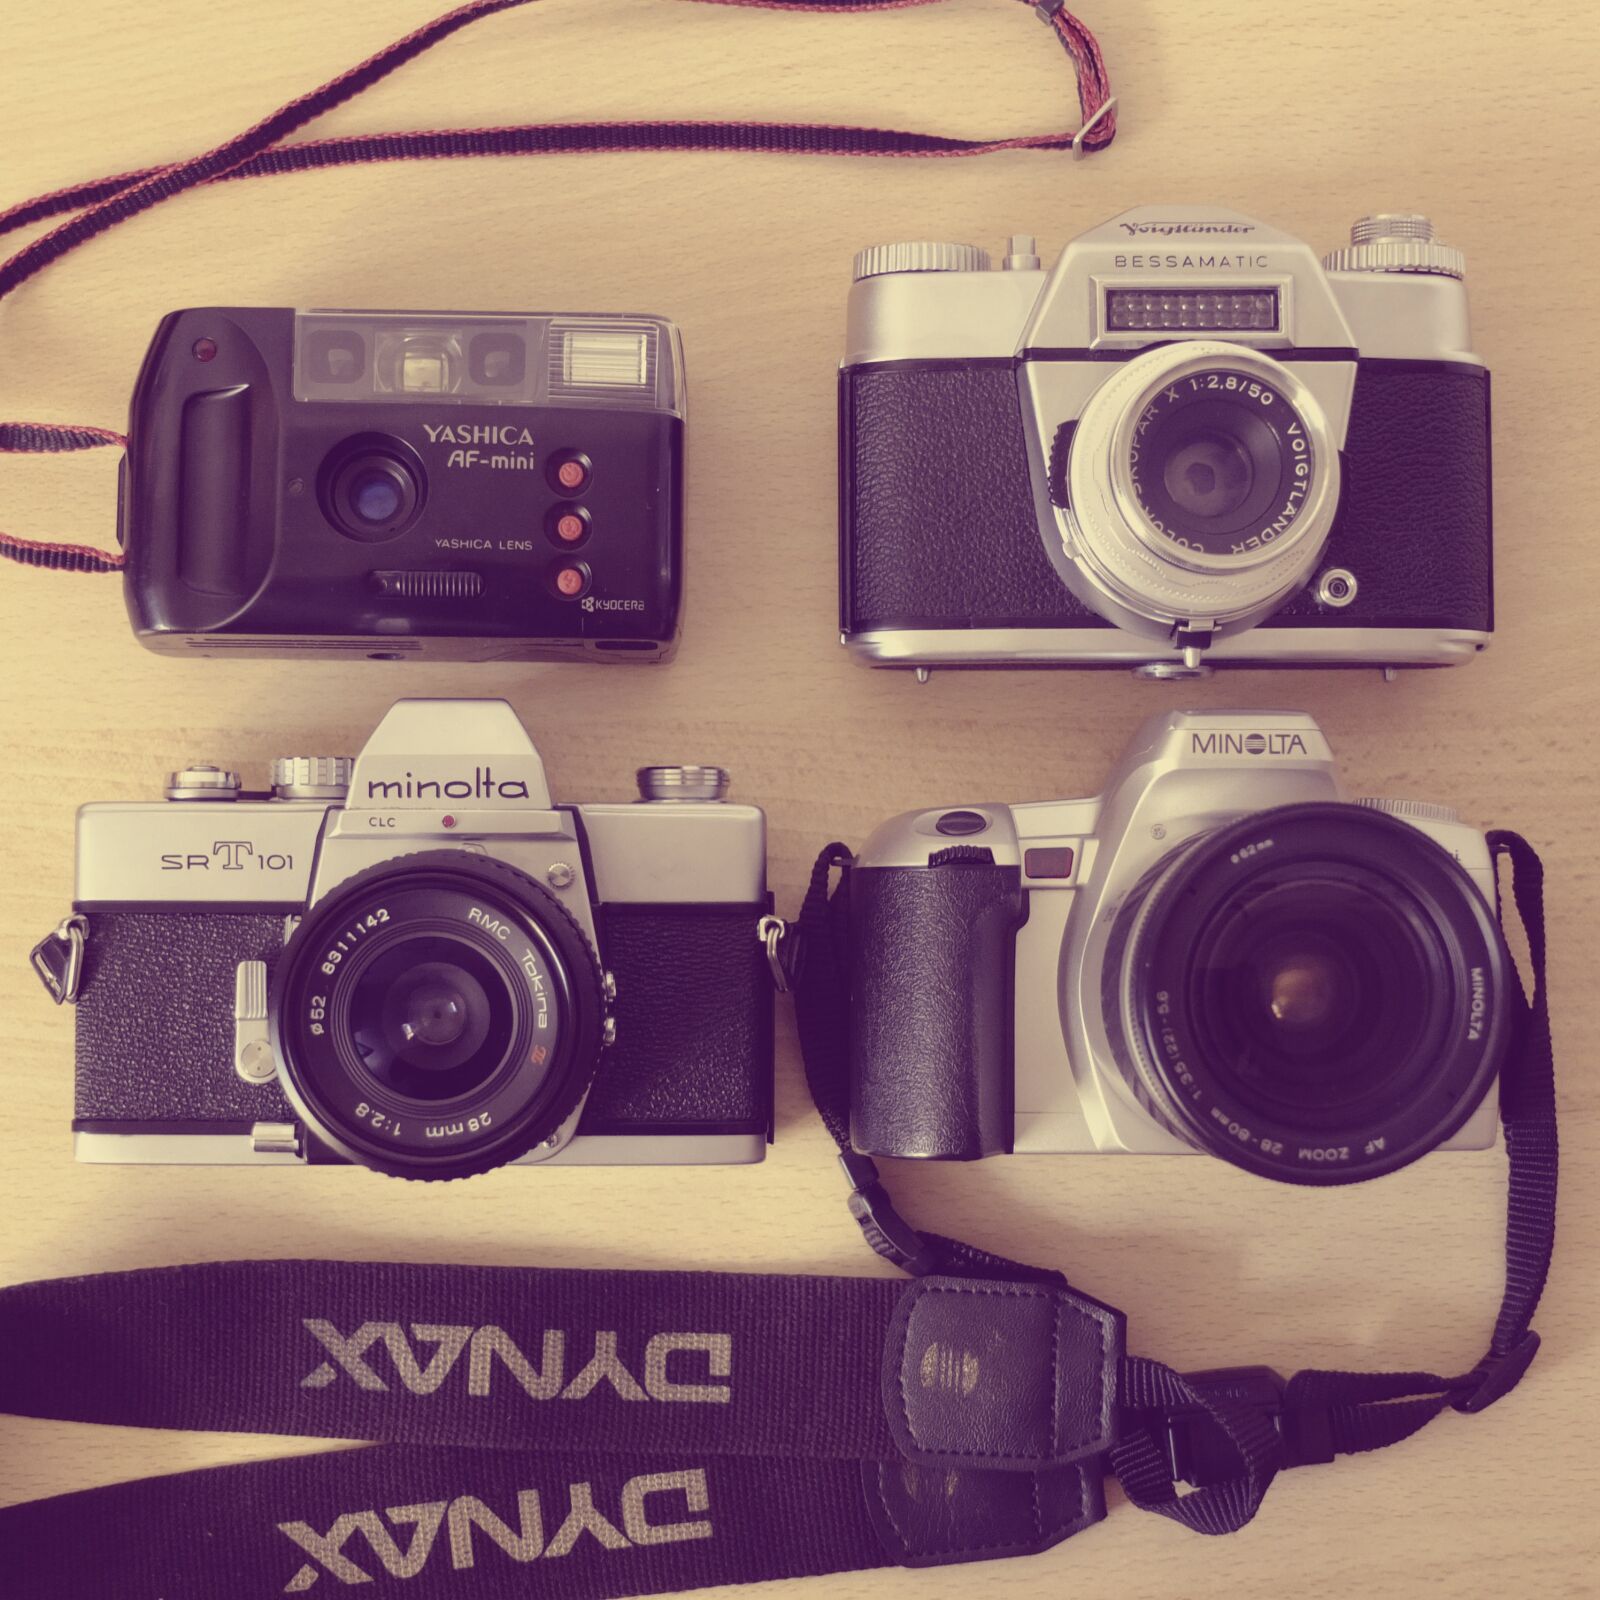 Fujifilm X10 sample photo. Cameras, minolta, voigtlander photography